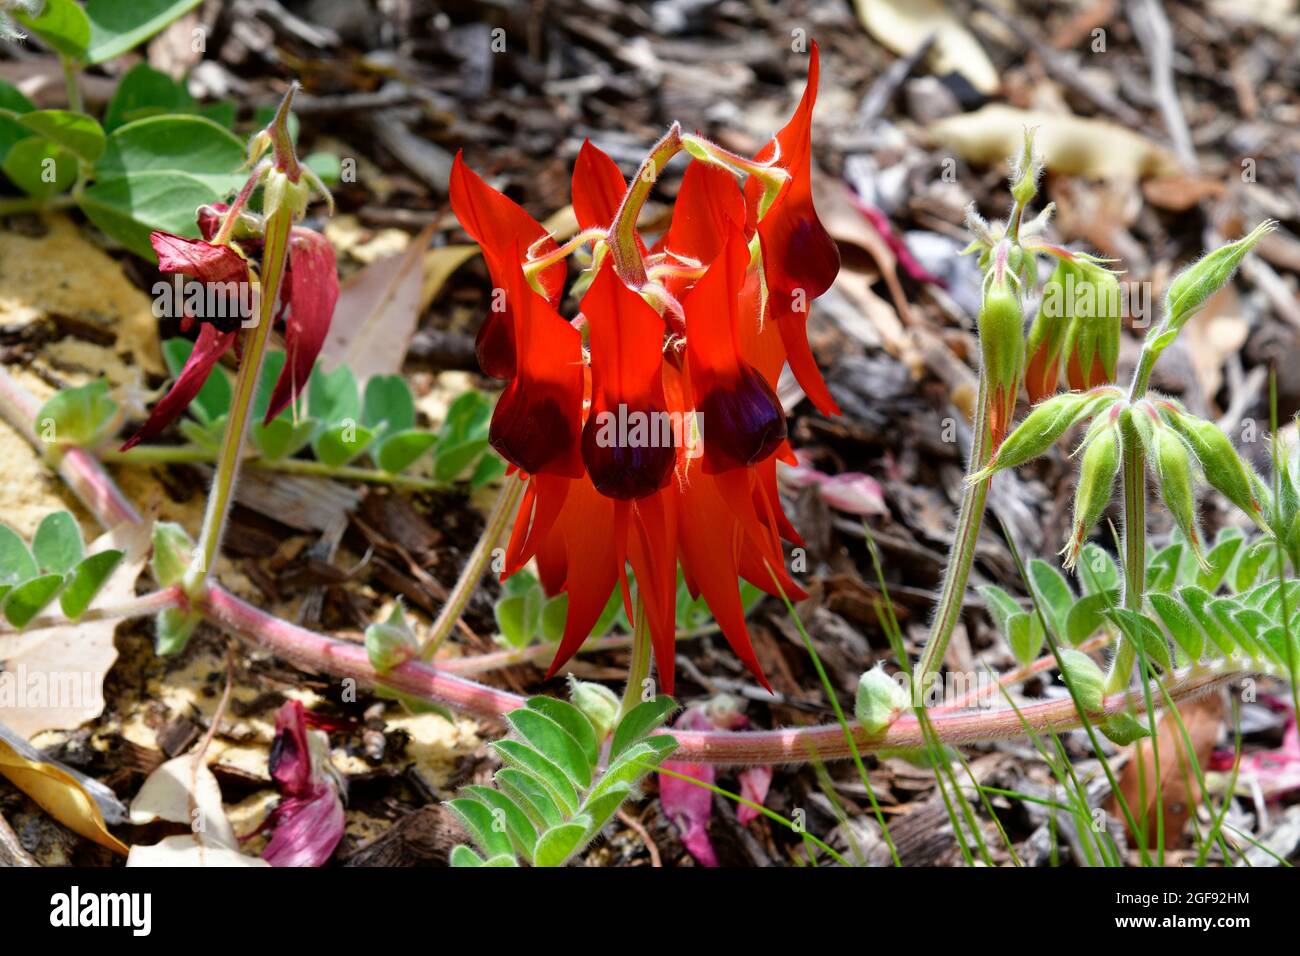 Australia, sturt's desert pea la flor nacional de Australia del Sur Foto de stock